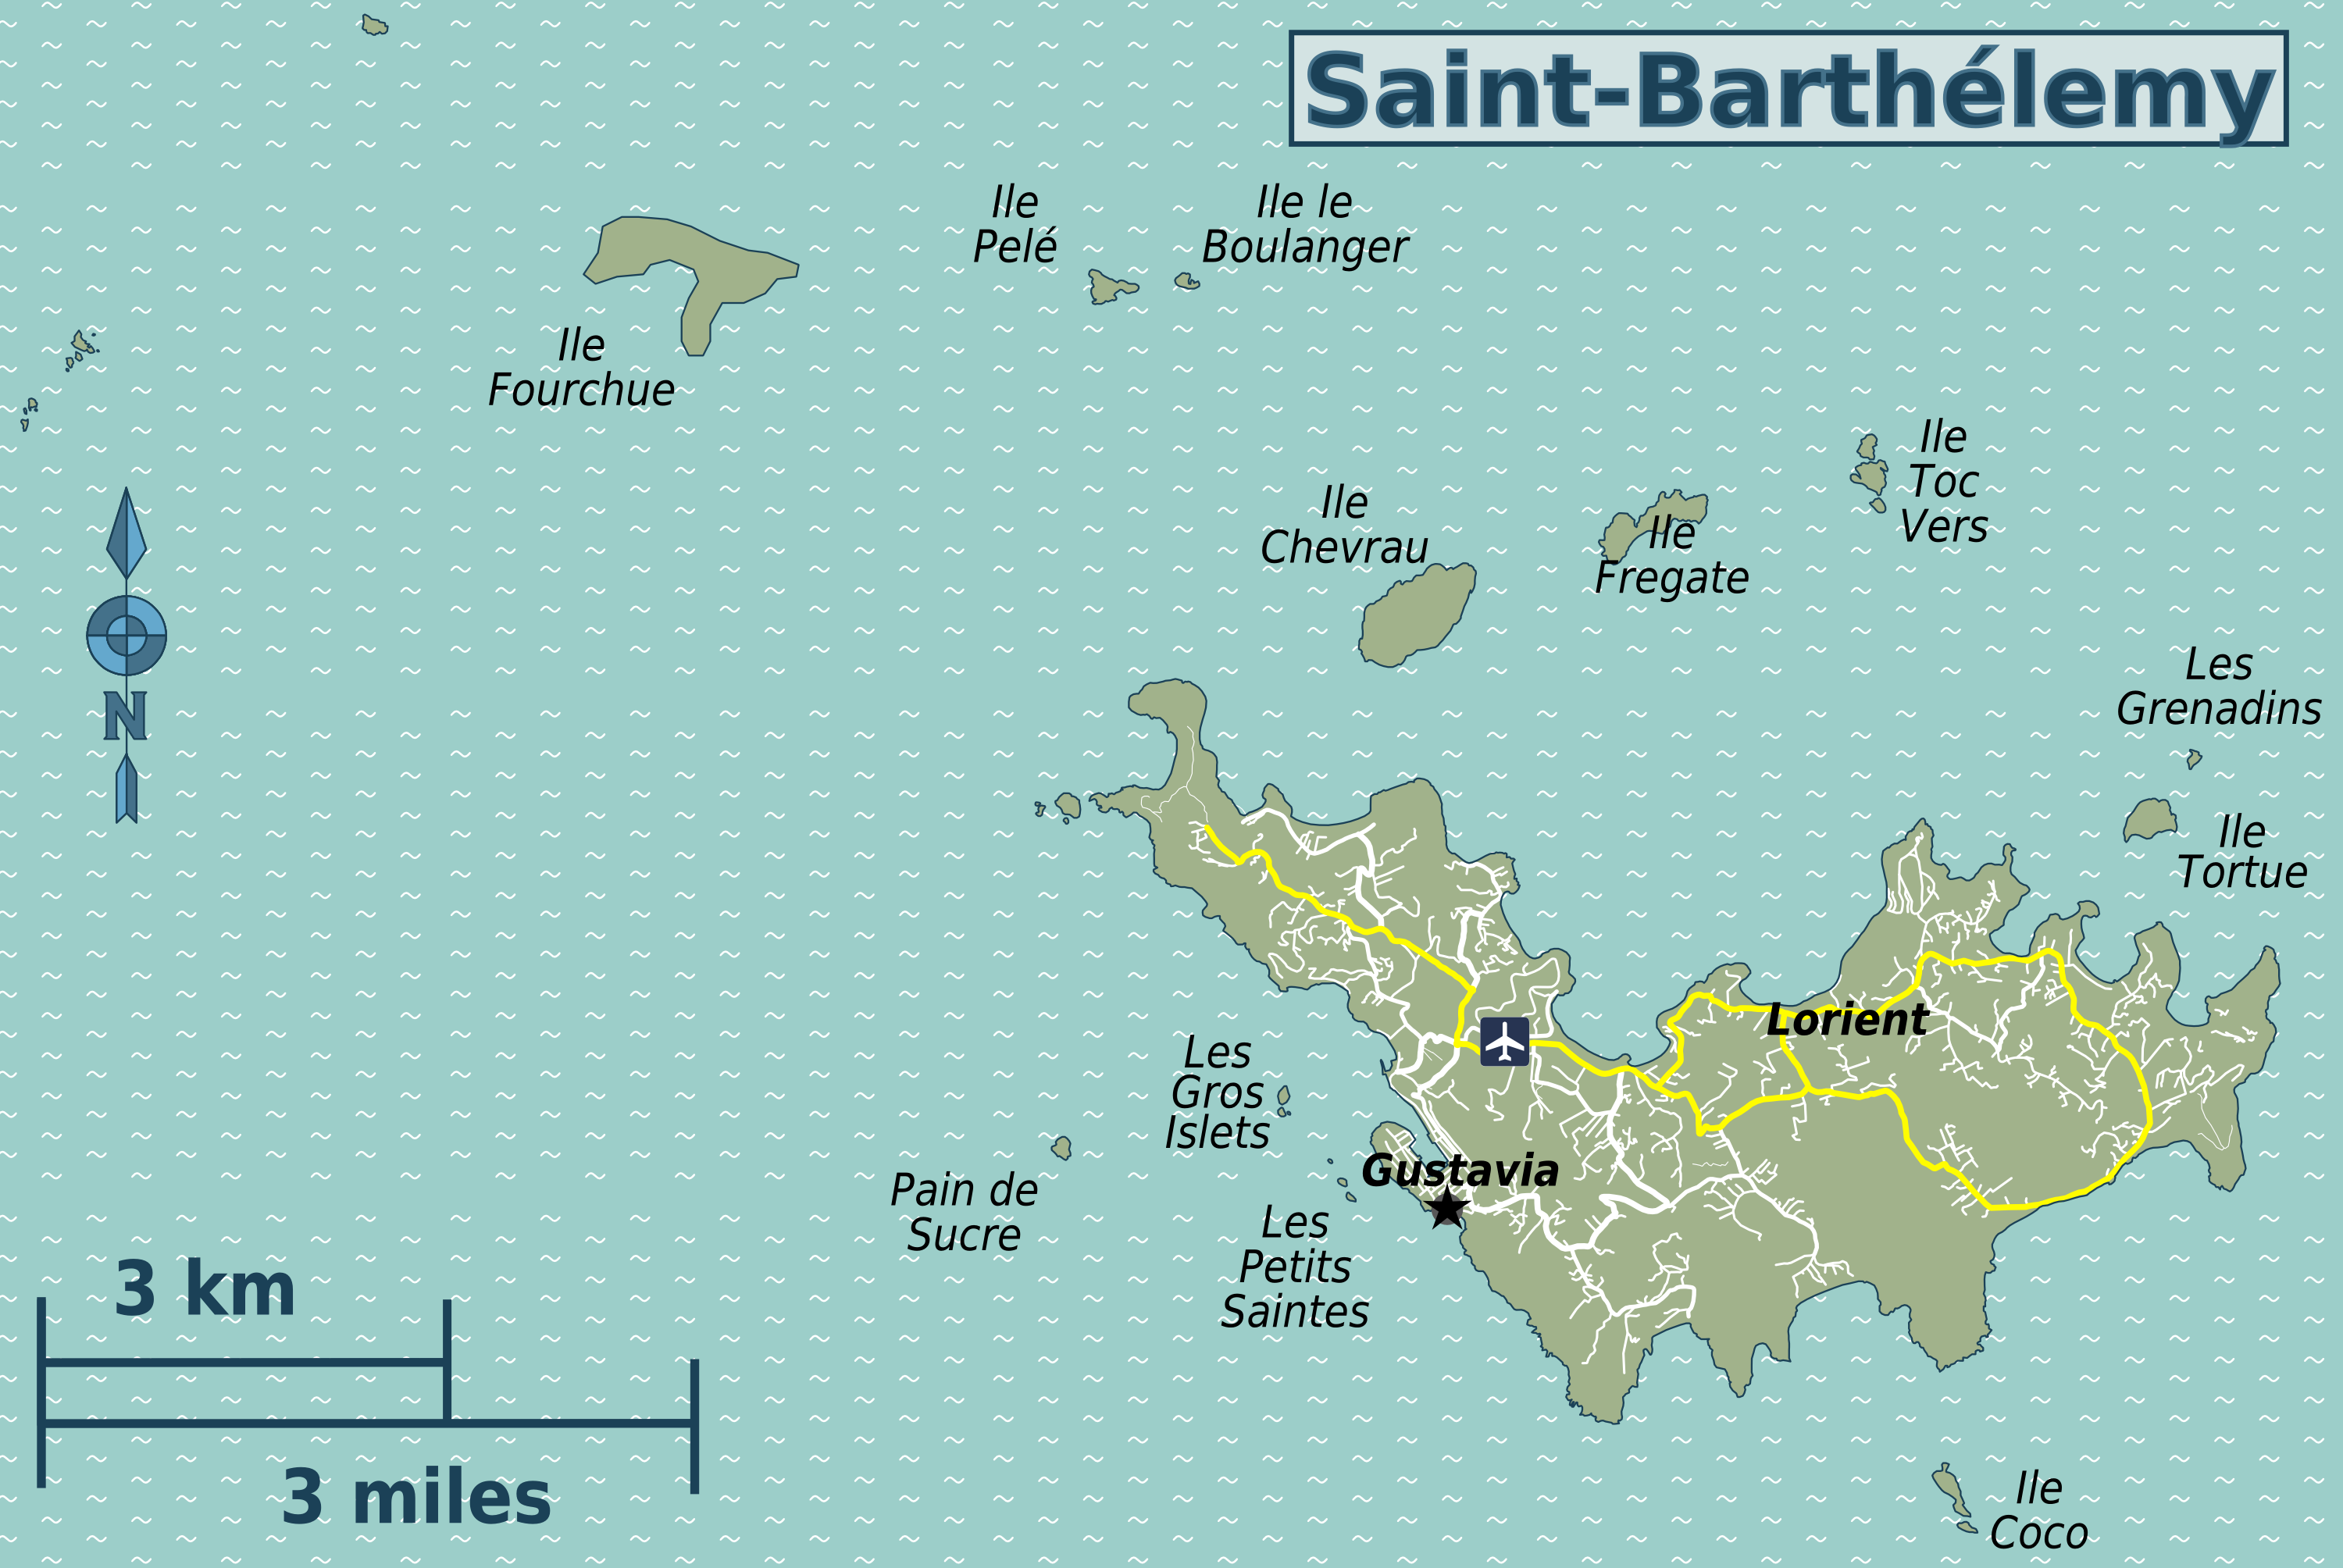 Télécharger dessins & arts divers carte de voyage saint-barthélemy gratuitement